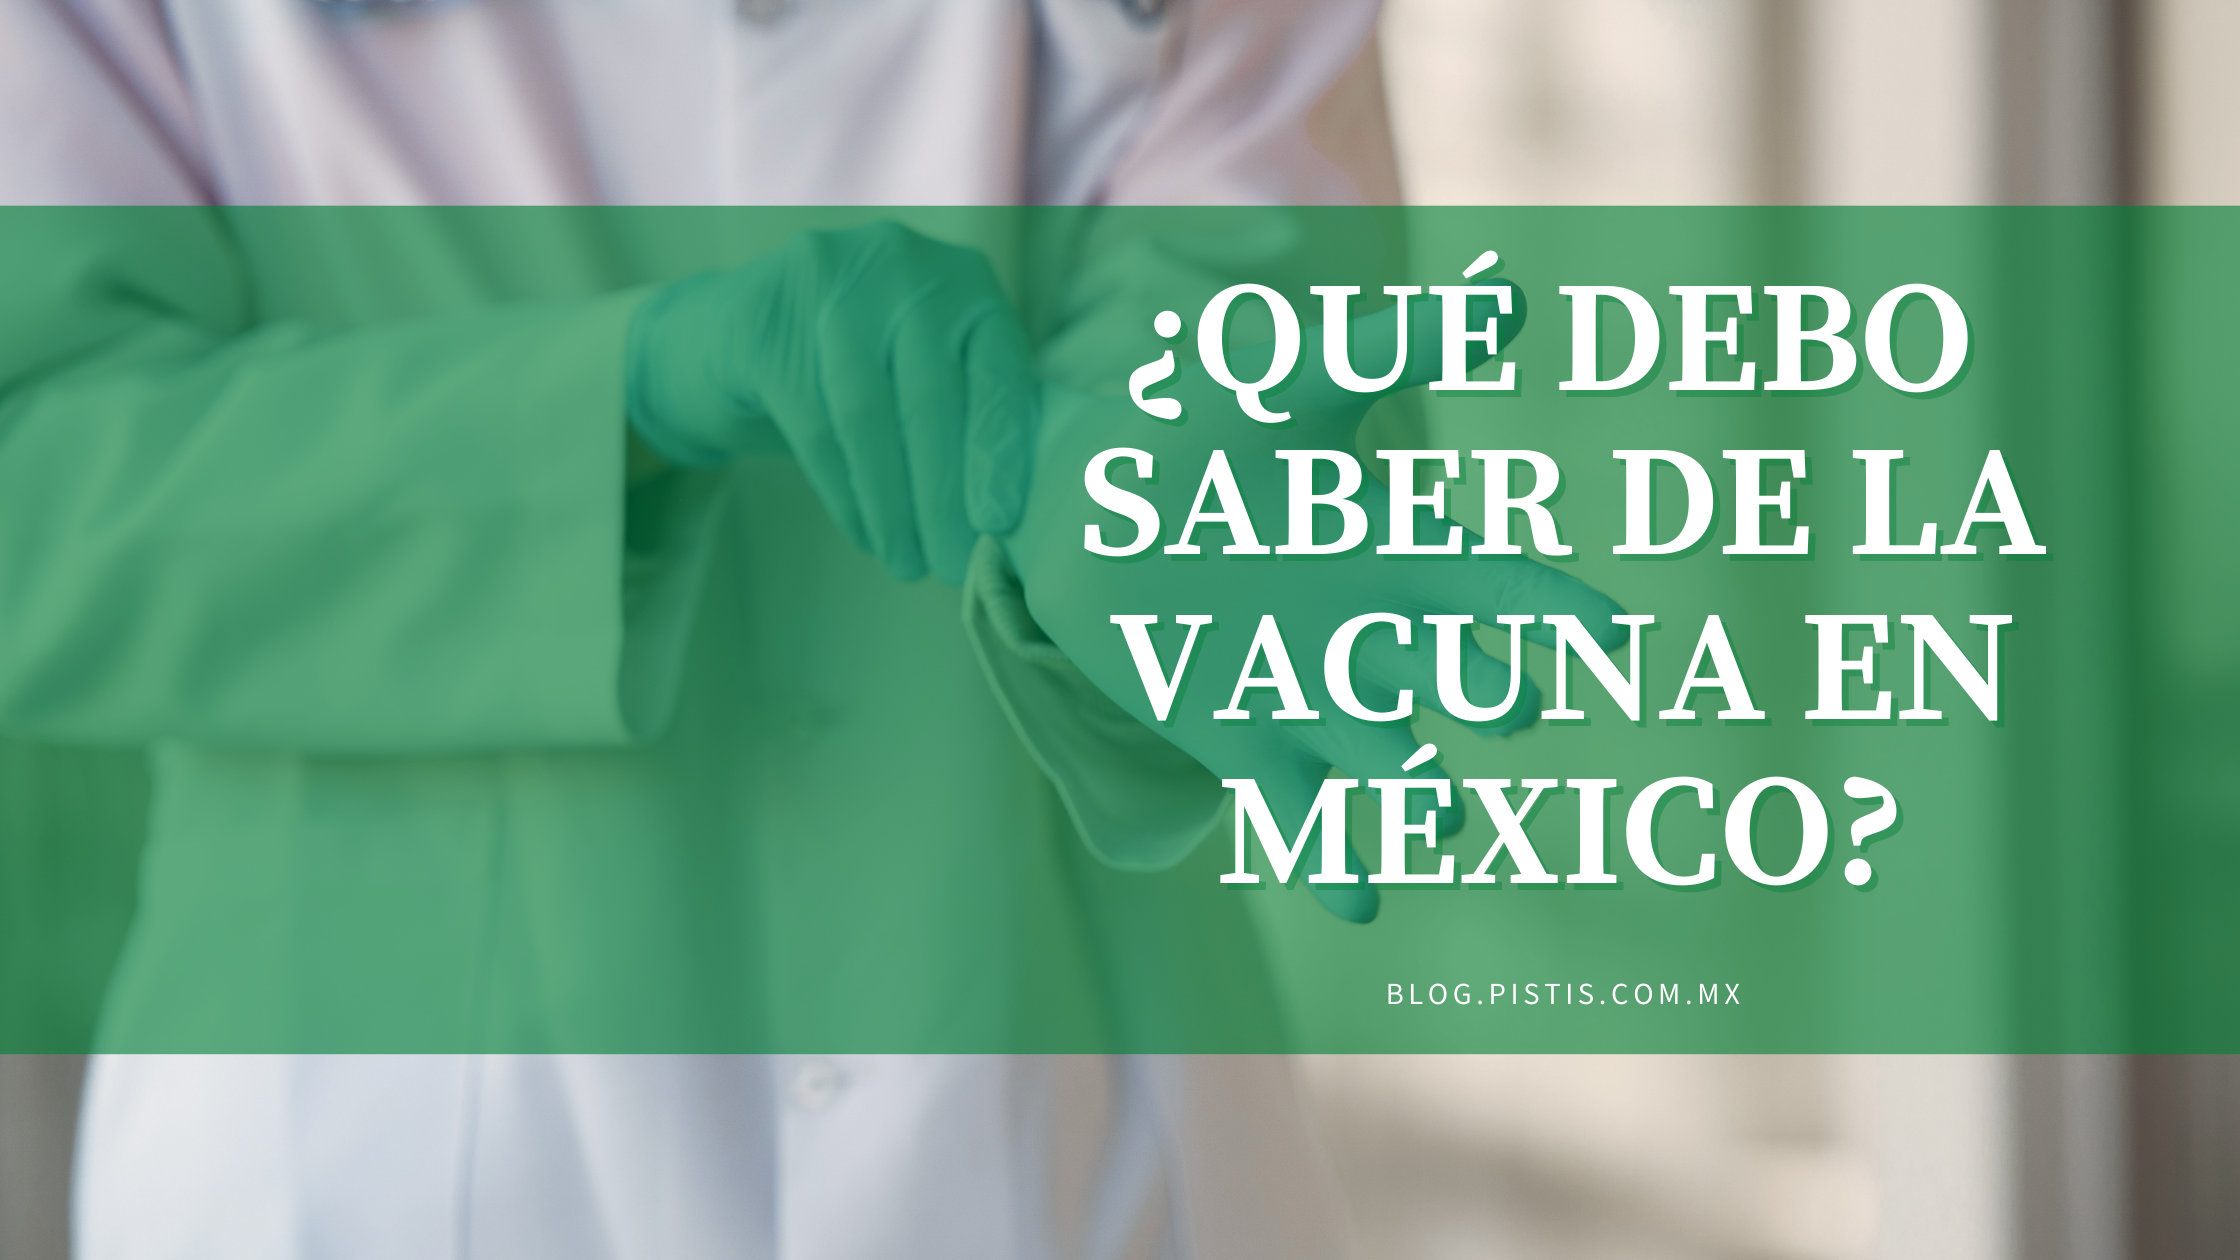 ¿Qué debo saber de la vacuna en México?